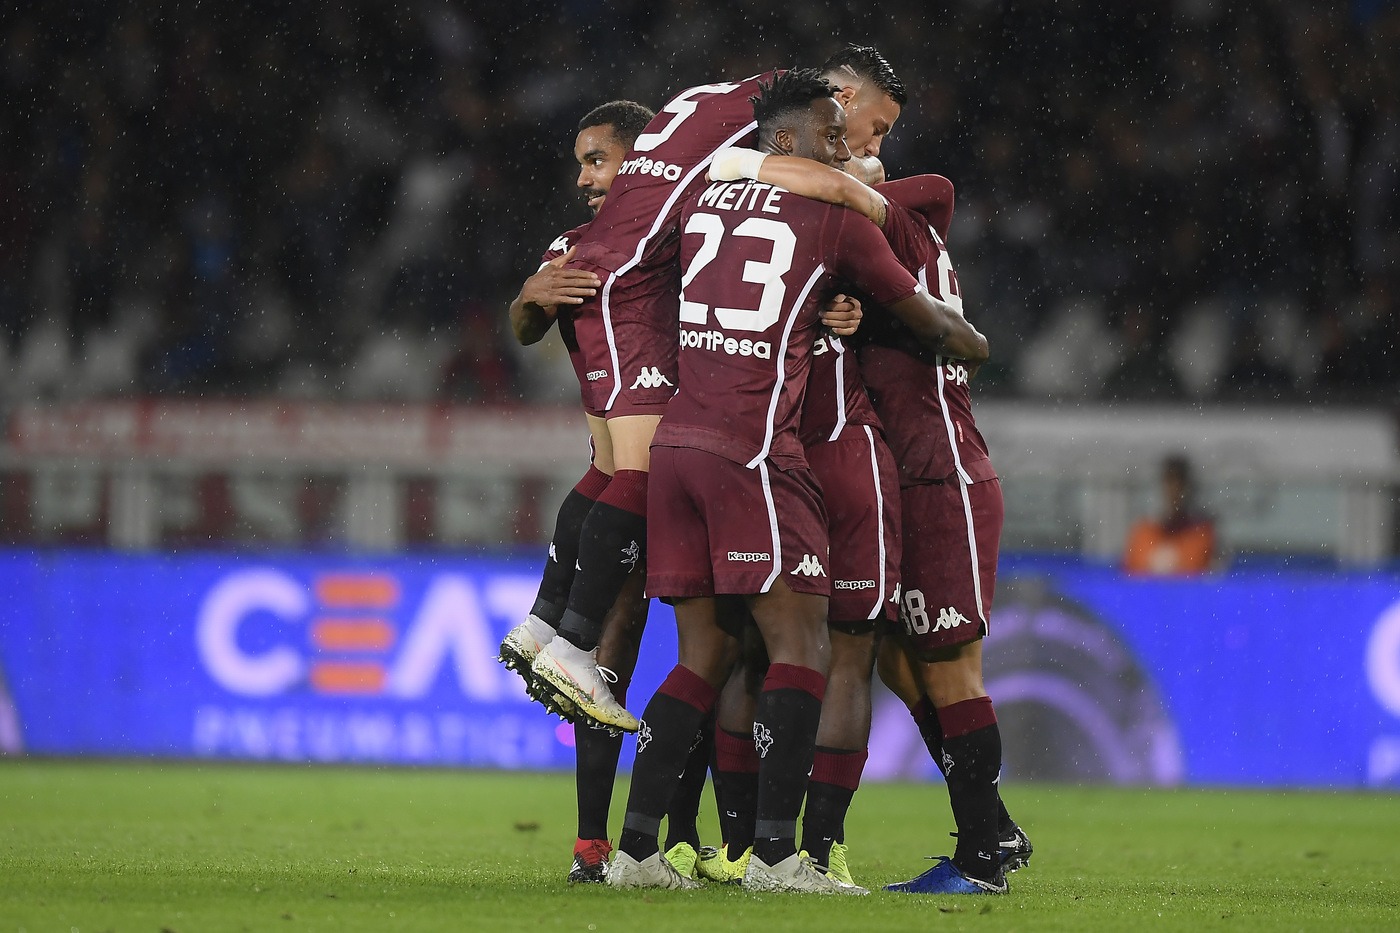 Torino-Parma 10 novembre: si gioca per la 12 esima giornata del nostro campionato. Granata favoriti, ducali in difficoltà.